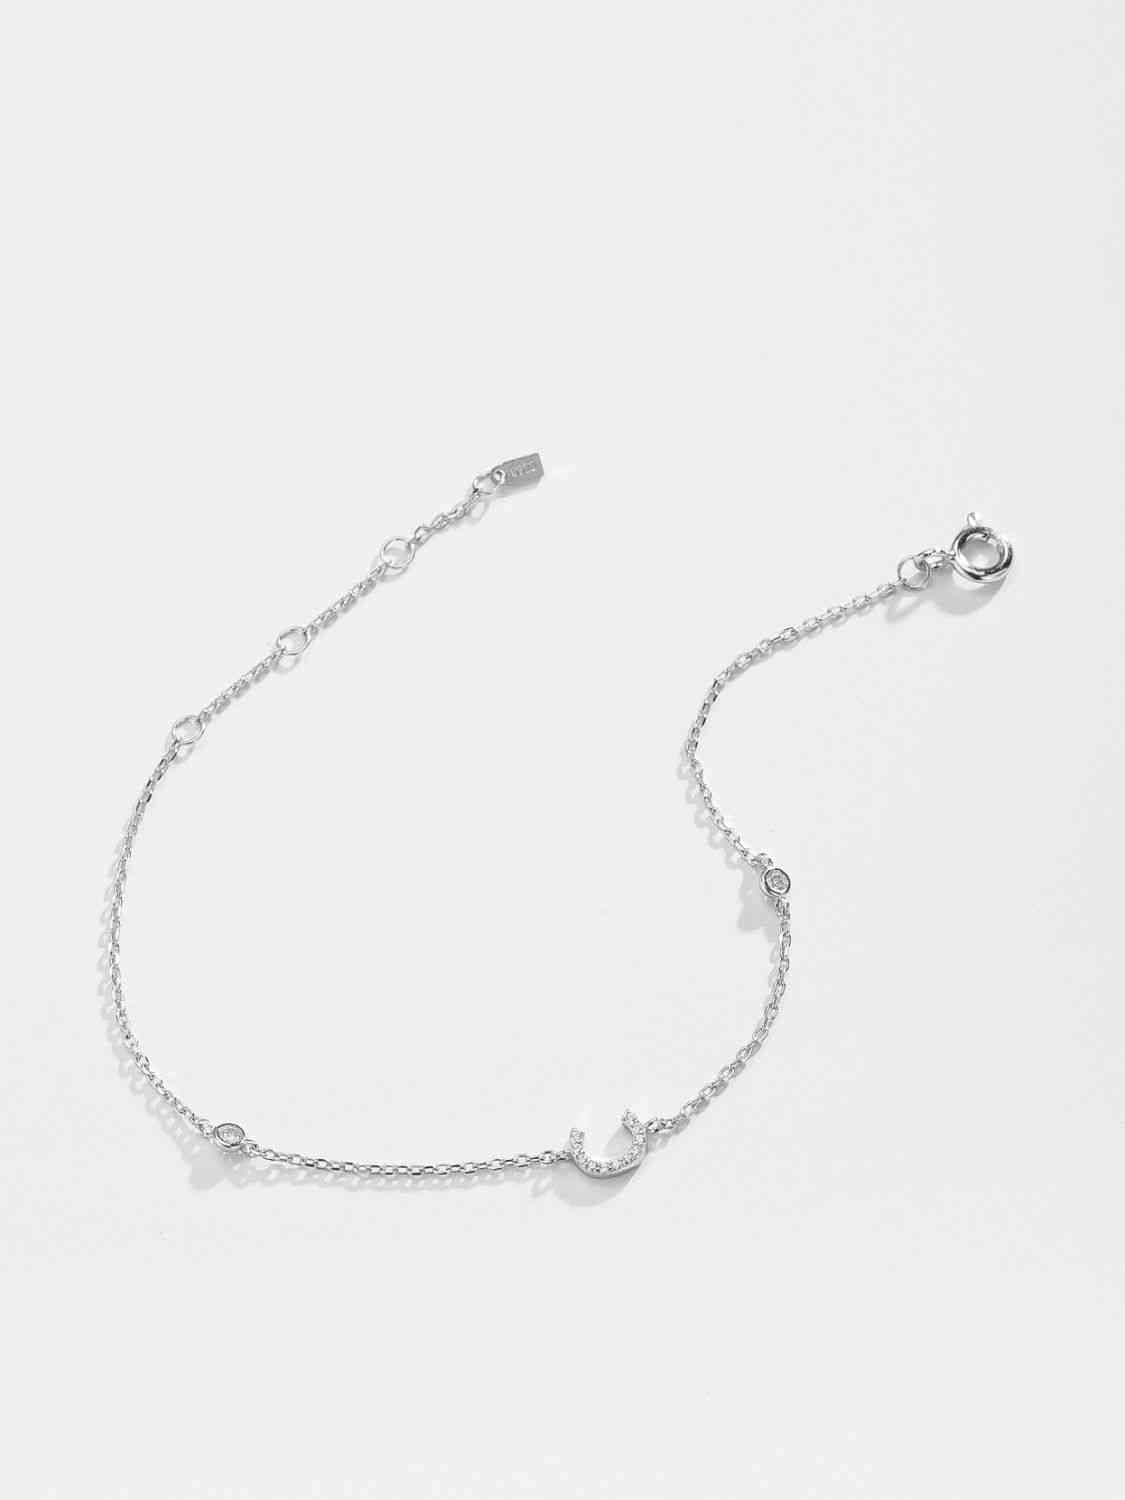 A To F Zircon 925 Sterling Silver Bracelet - Pahabu